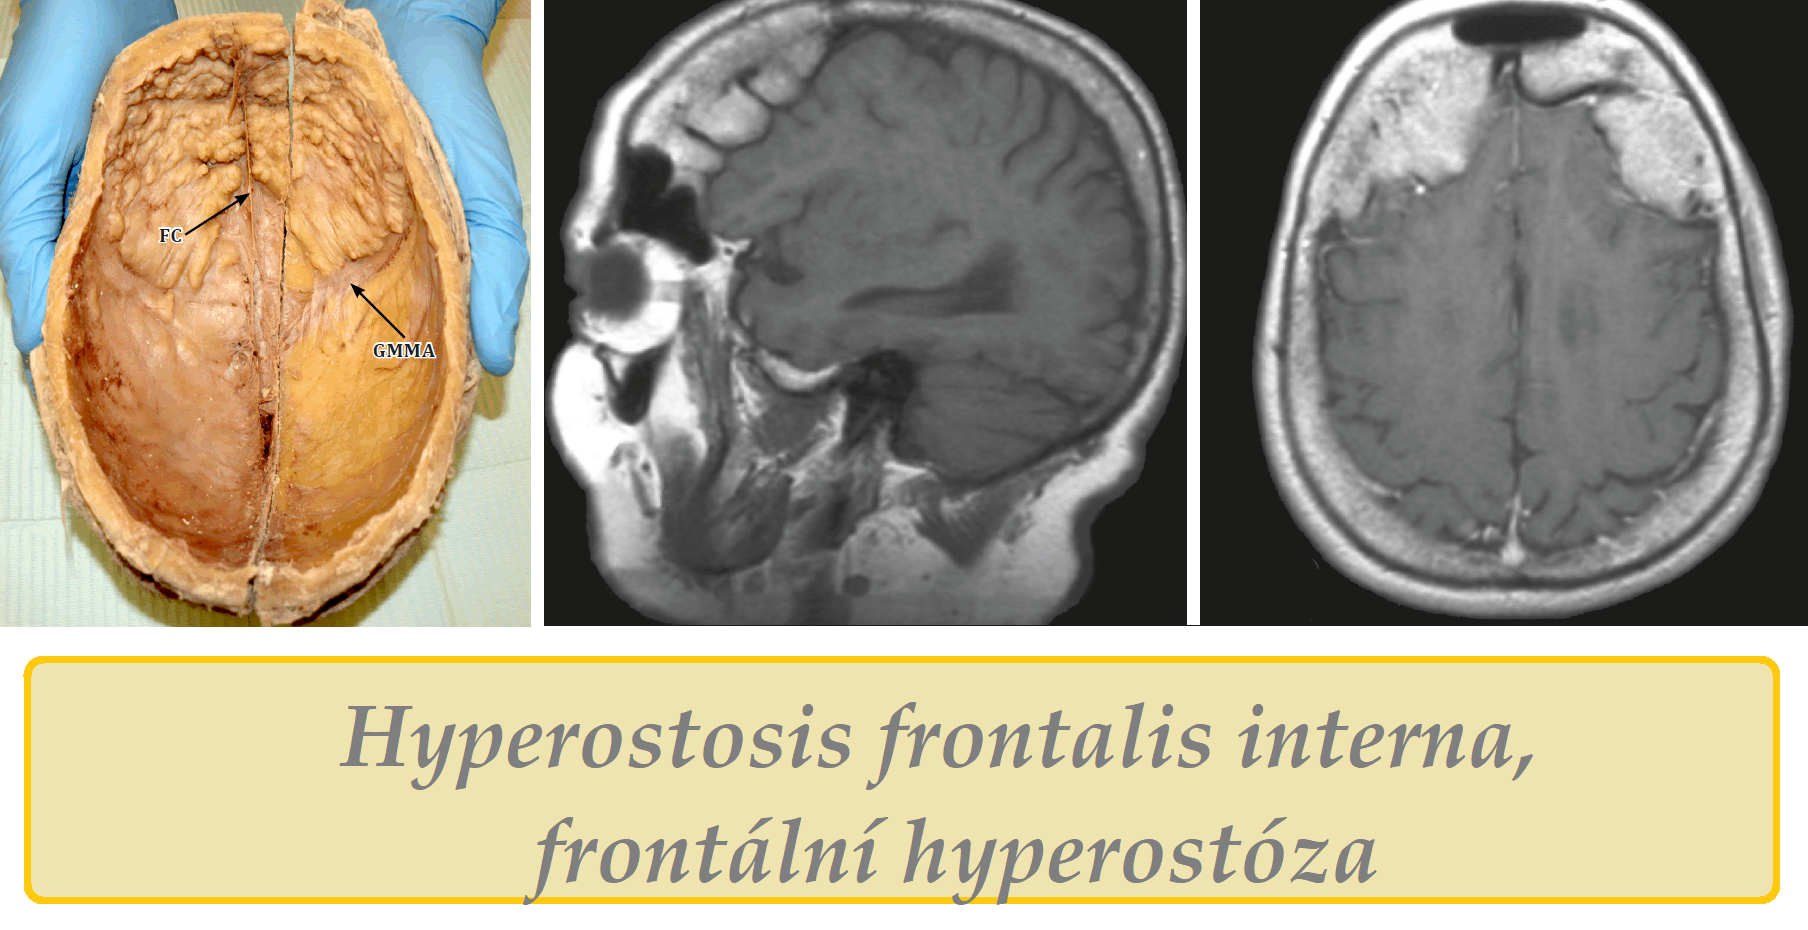 Frontální hyperostóza hyperostosis frontalis interna obrázek fotografie příznaky projevy symptomy příčina léčba